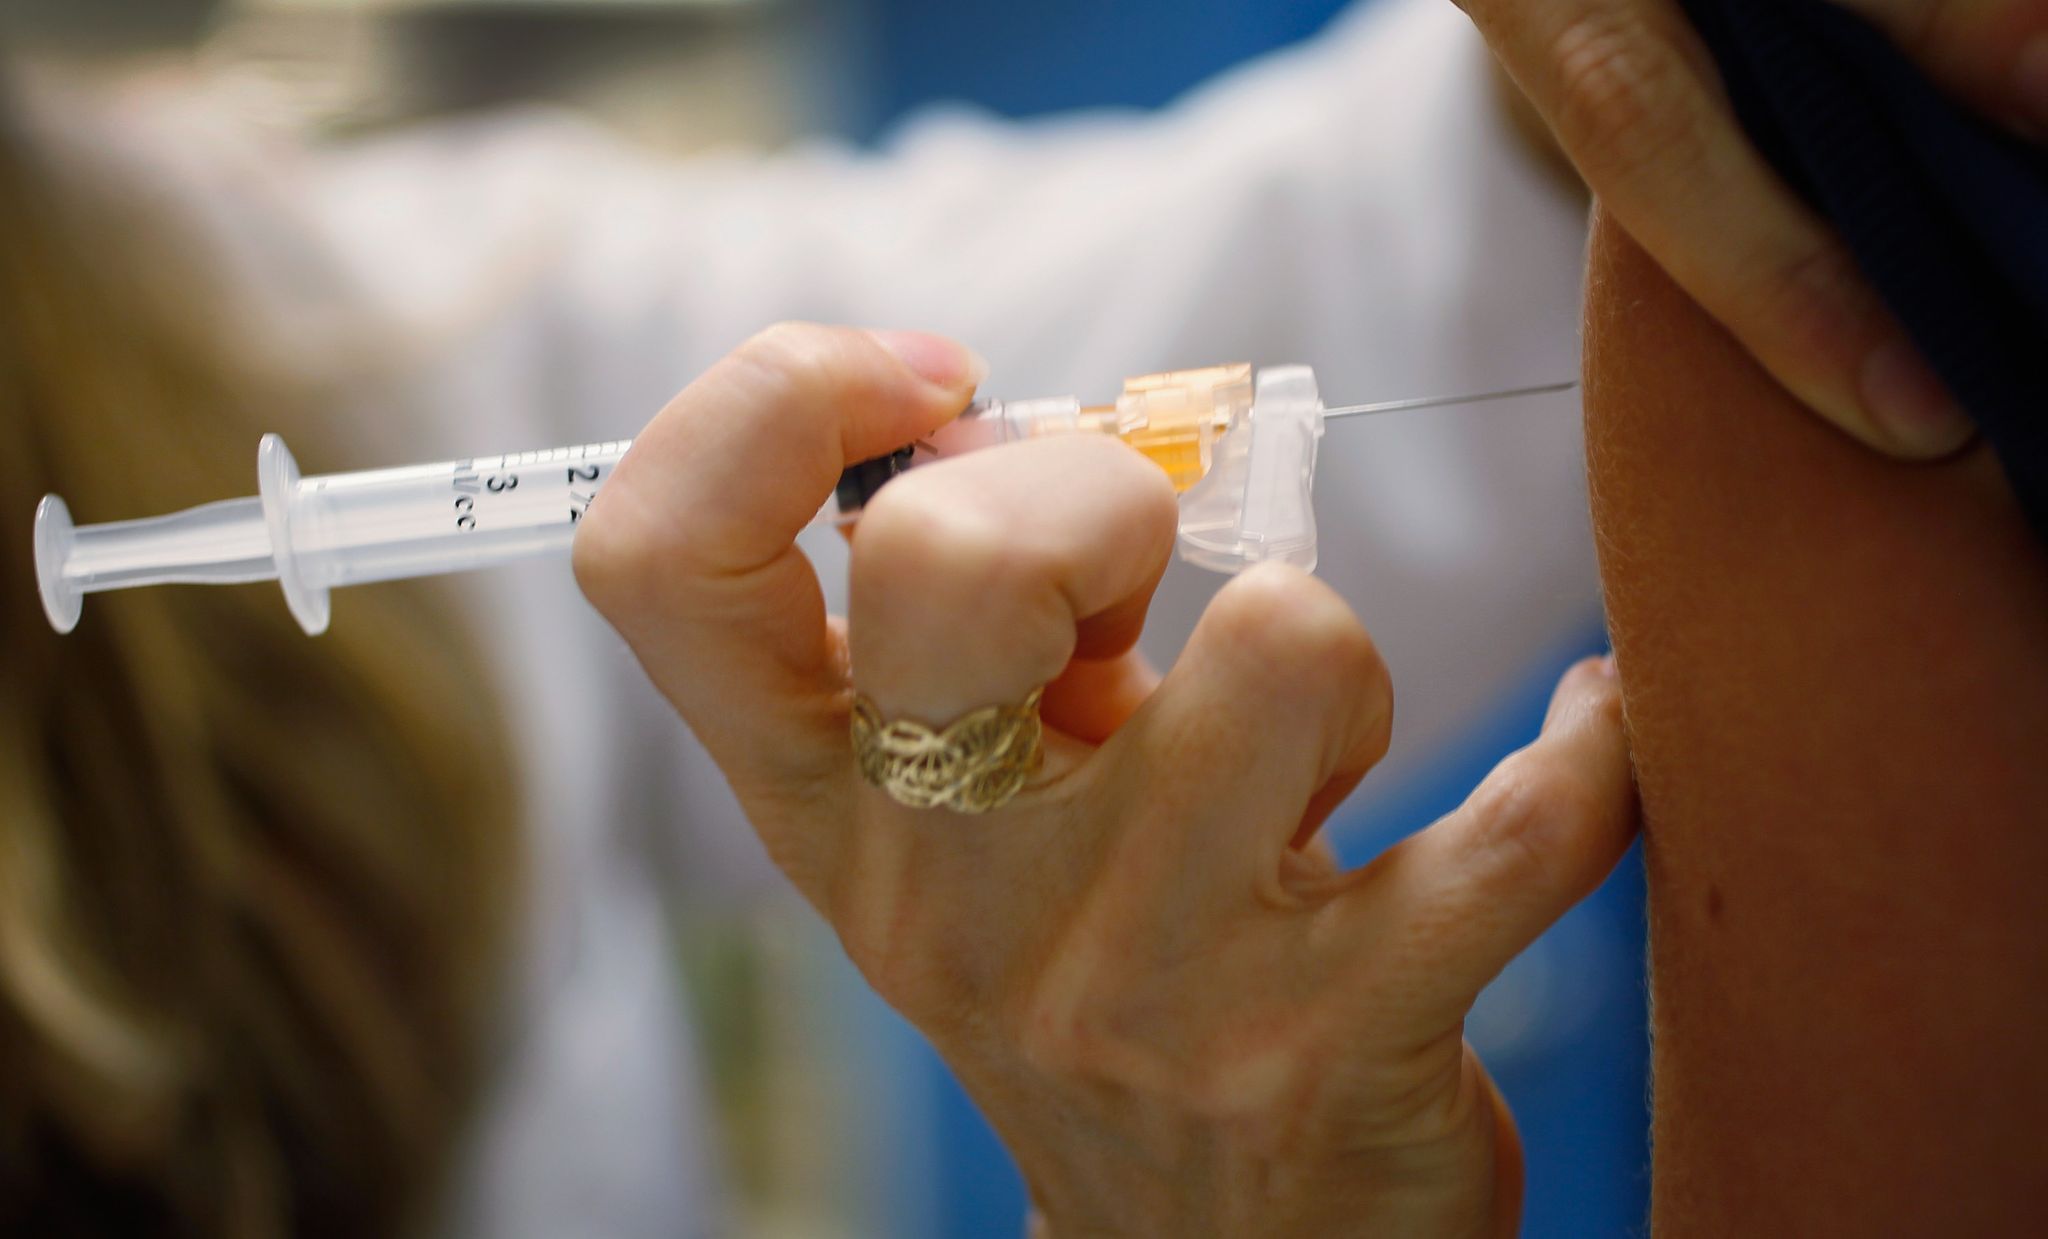 Un vaccin contre le cancer d'ici 2030 : espoir réaliste ou prématuré ? 